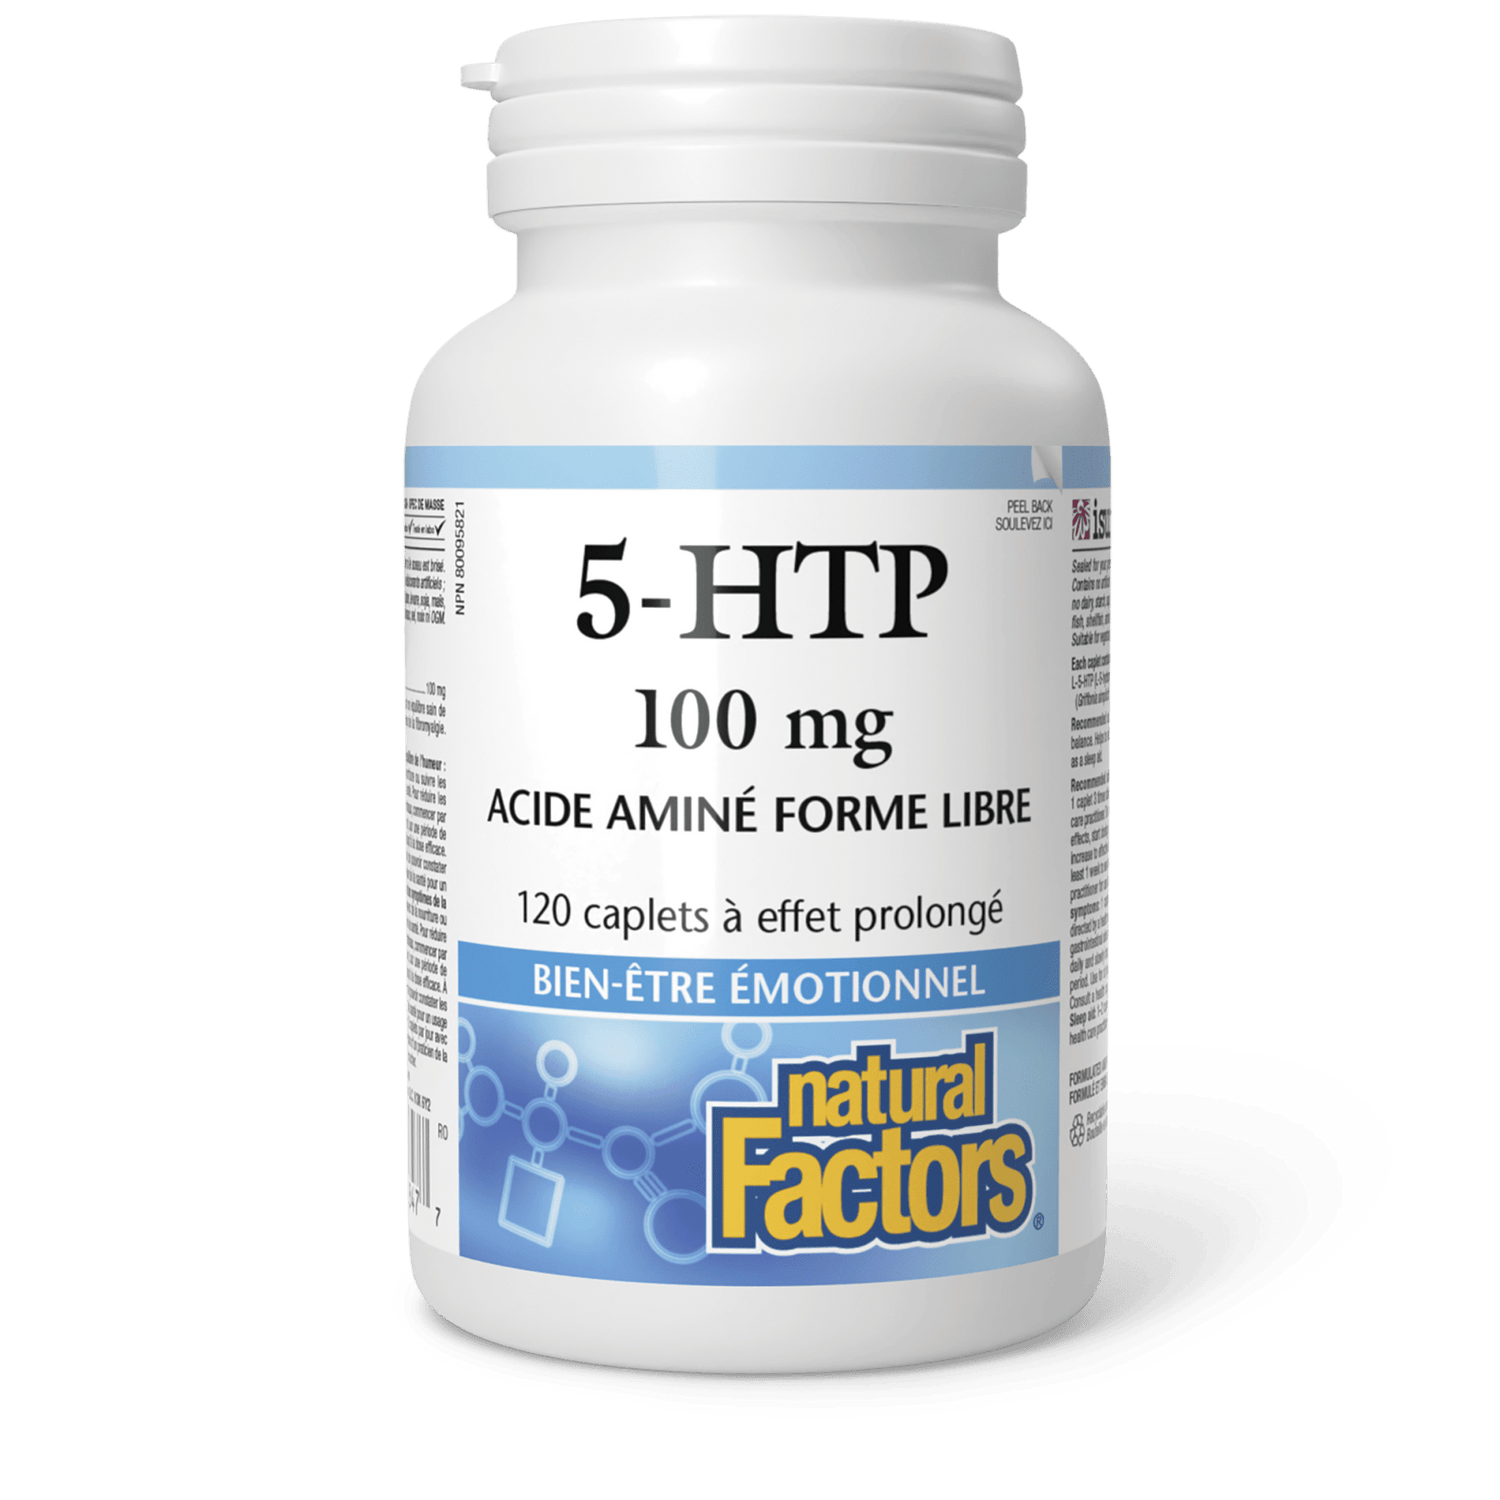 5-HTP 100 mg, Natural Factors|v|image|2847